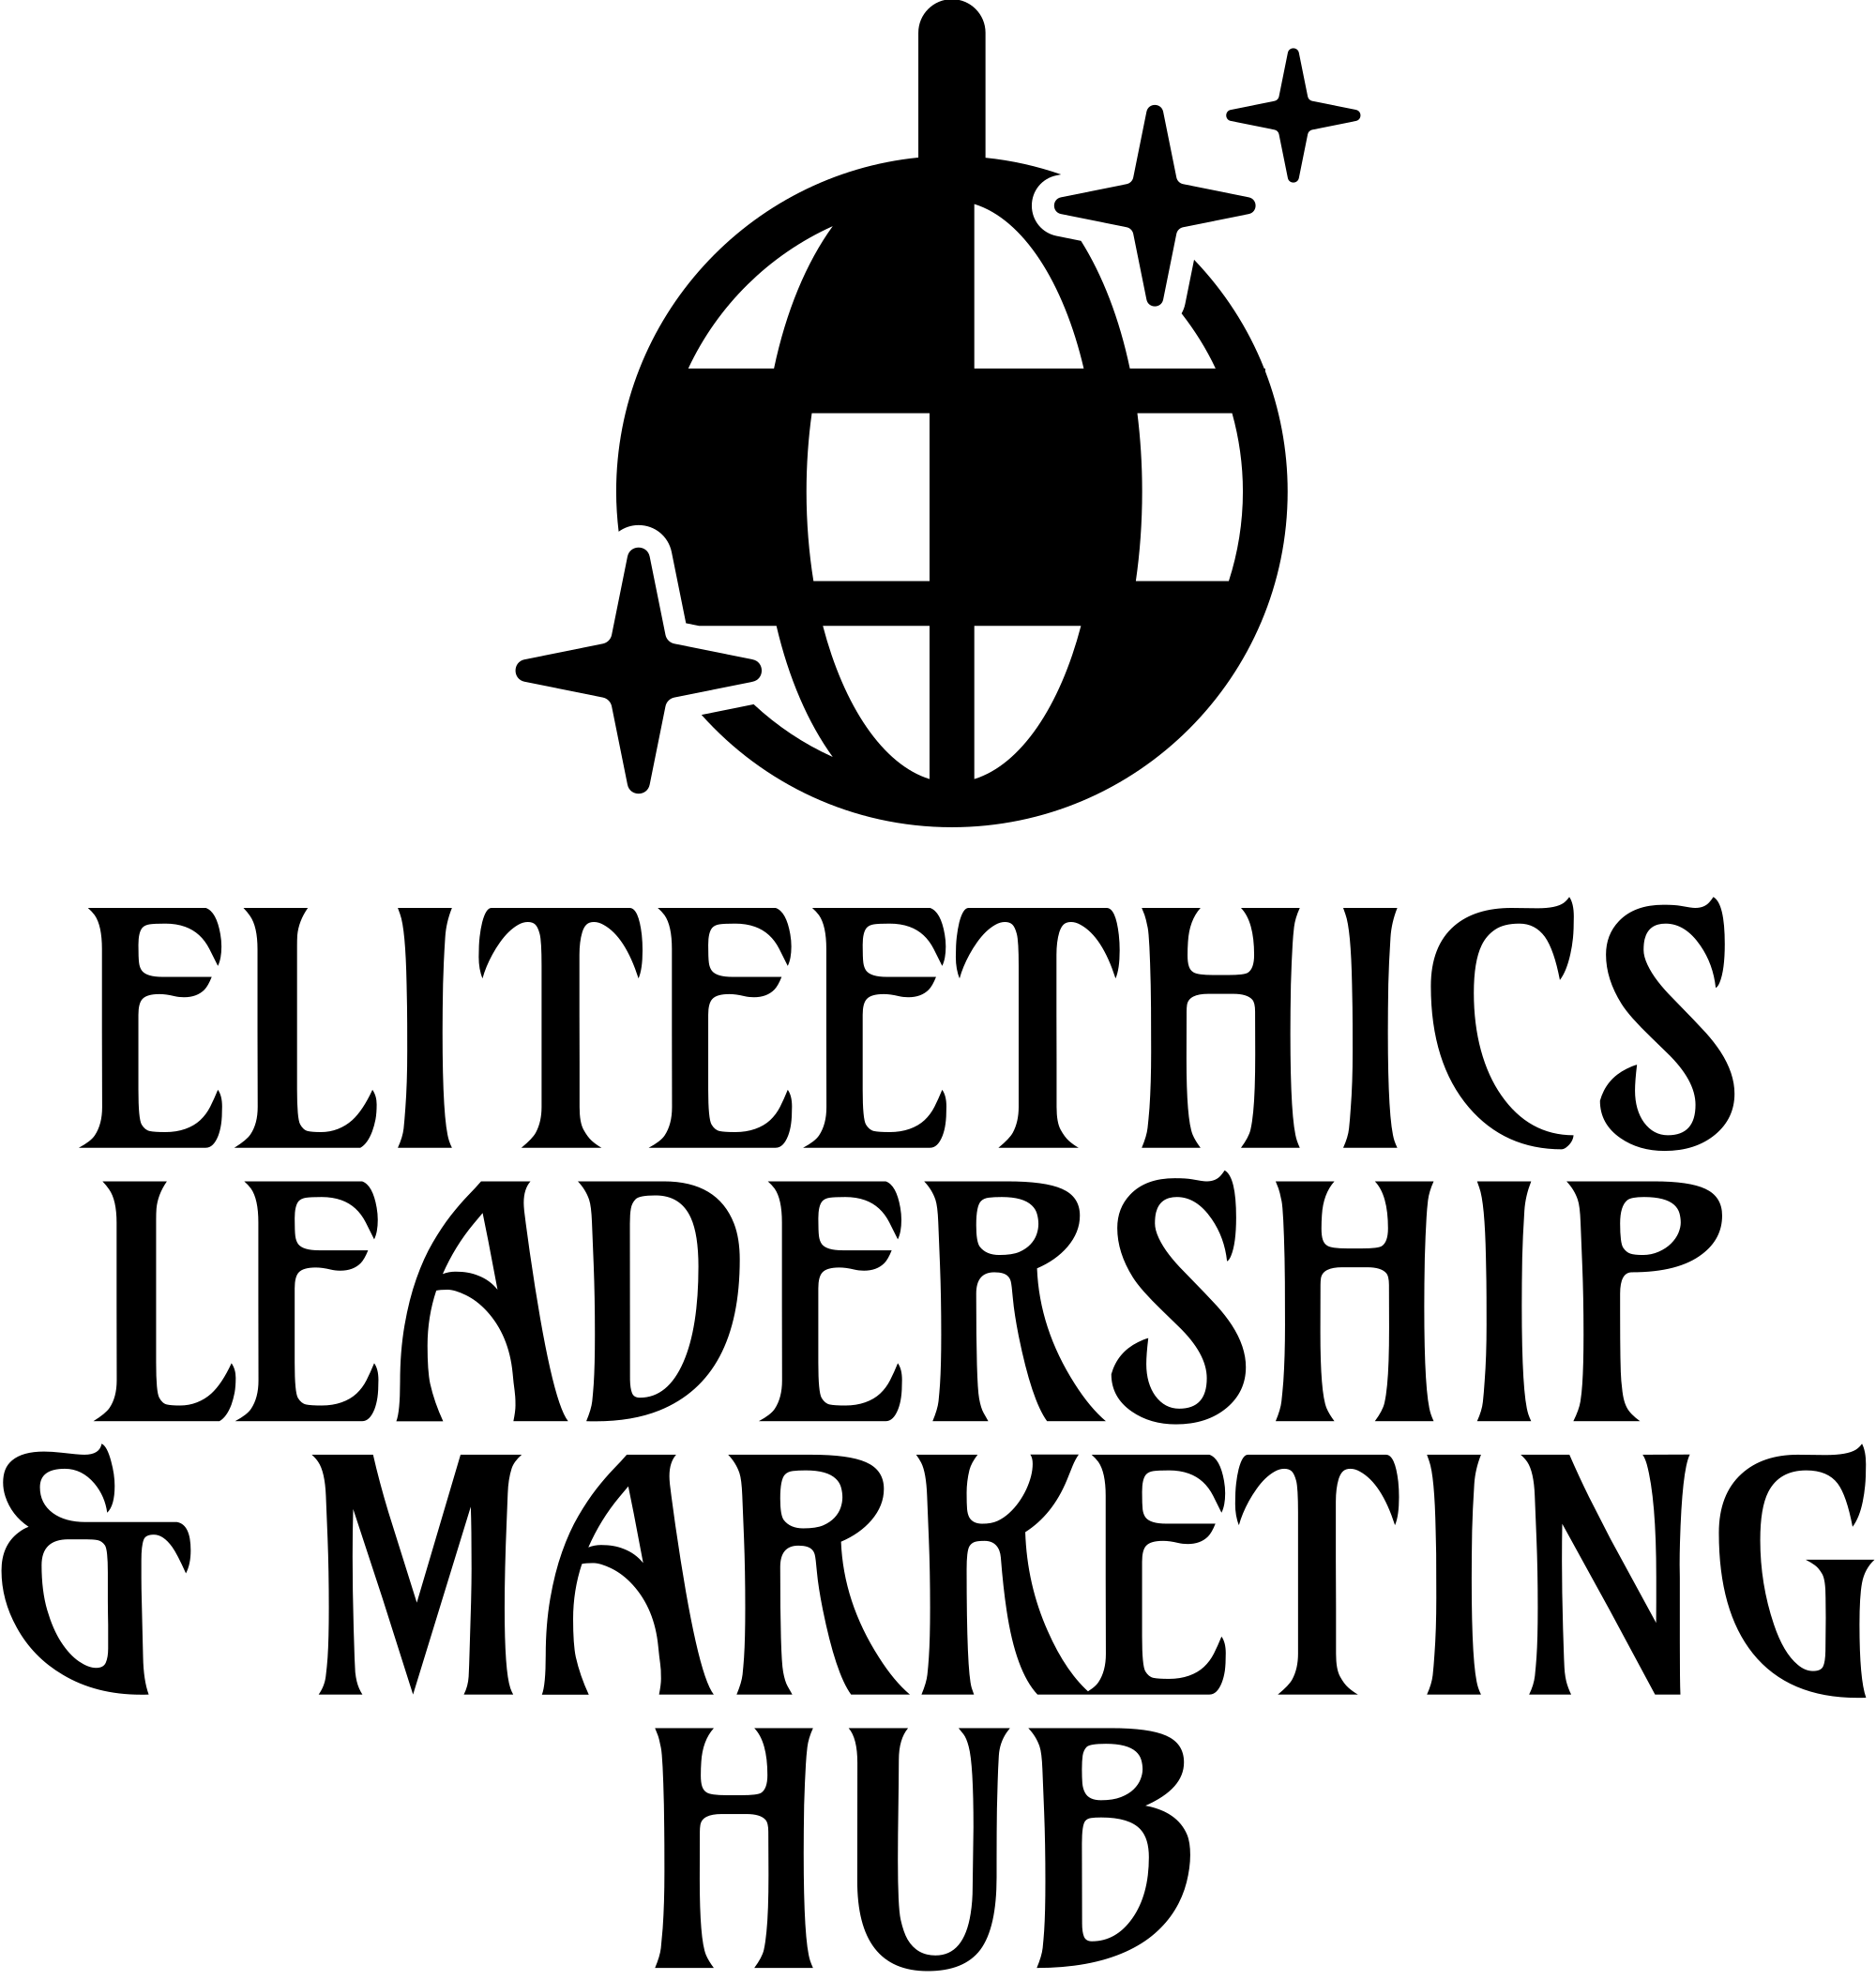 EliteEthics Leadership & Marketing Hub